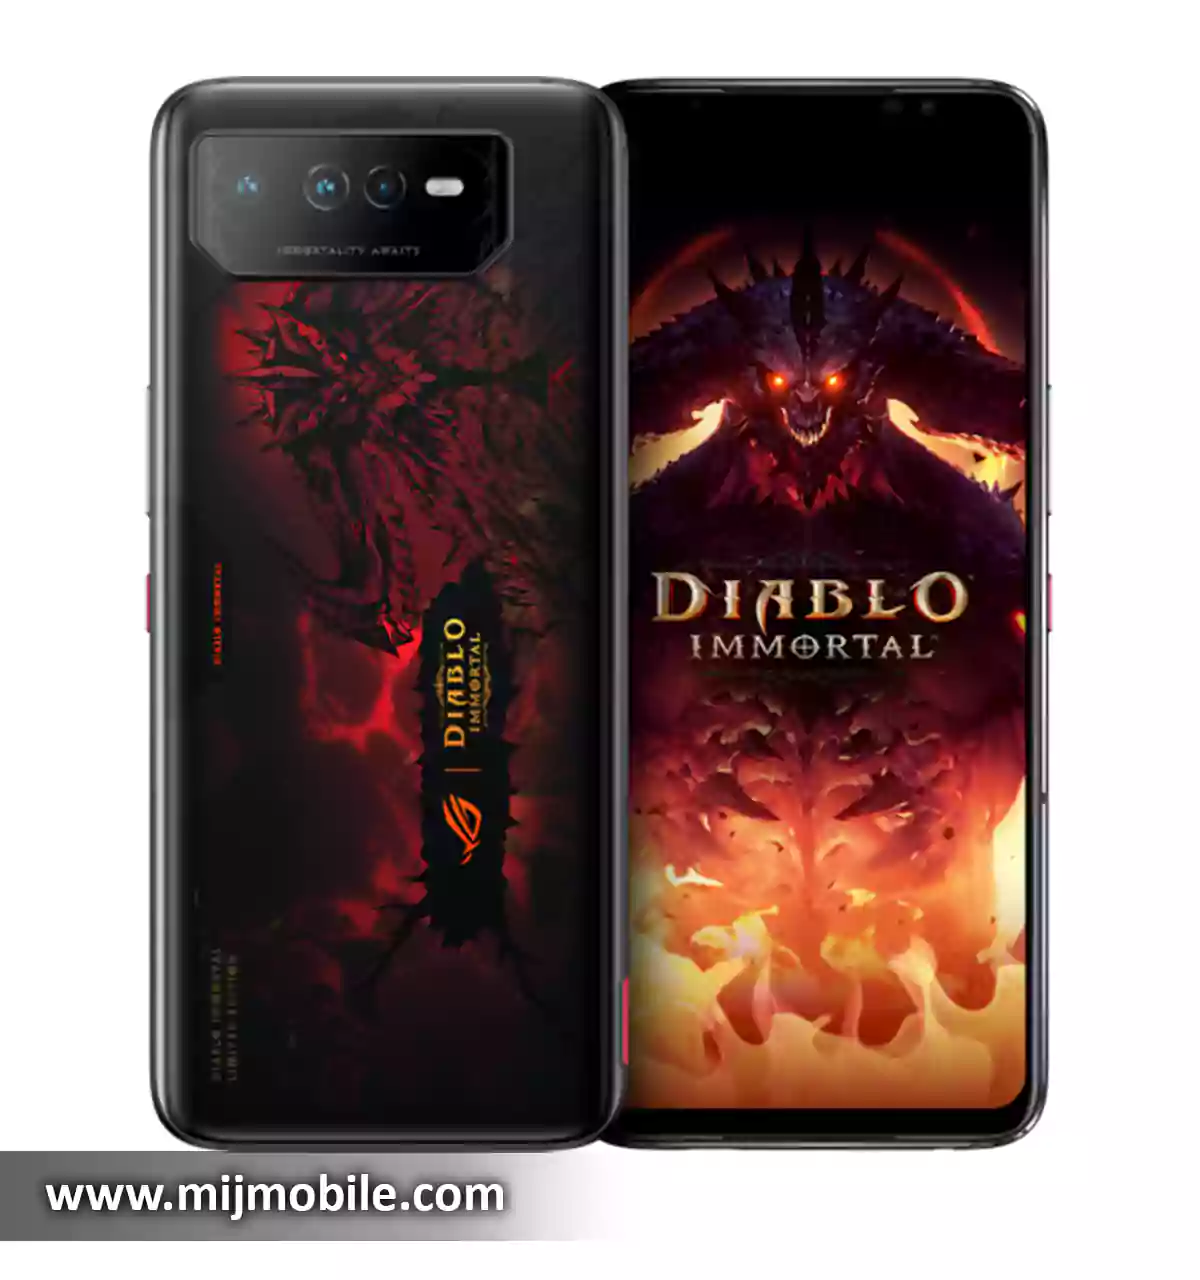 Asus ROG Phone 6 Diablo Immortal Price in Pakistan